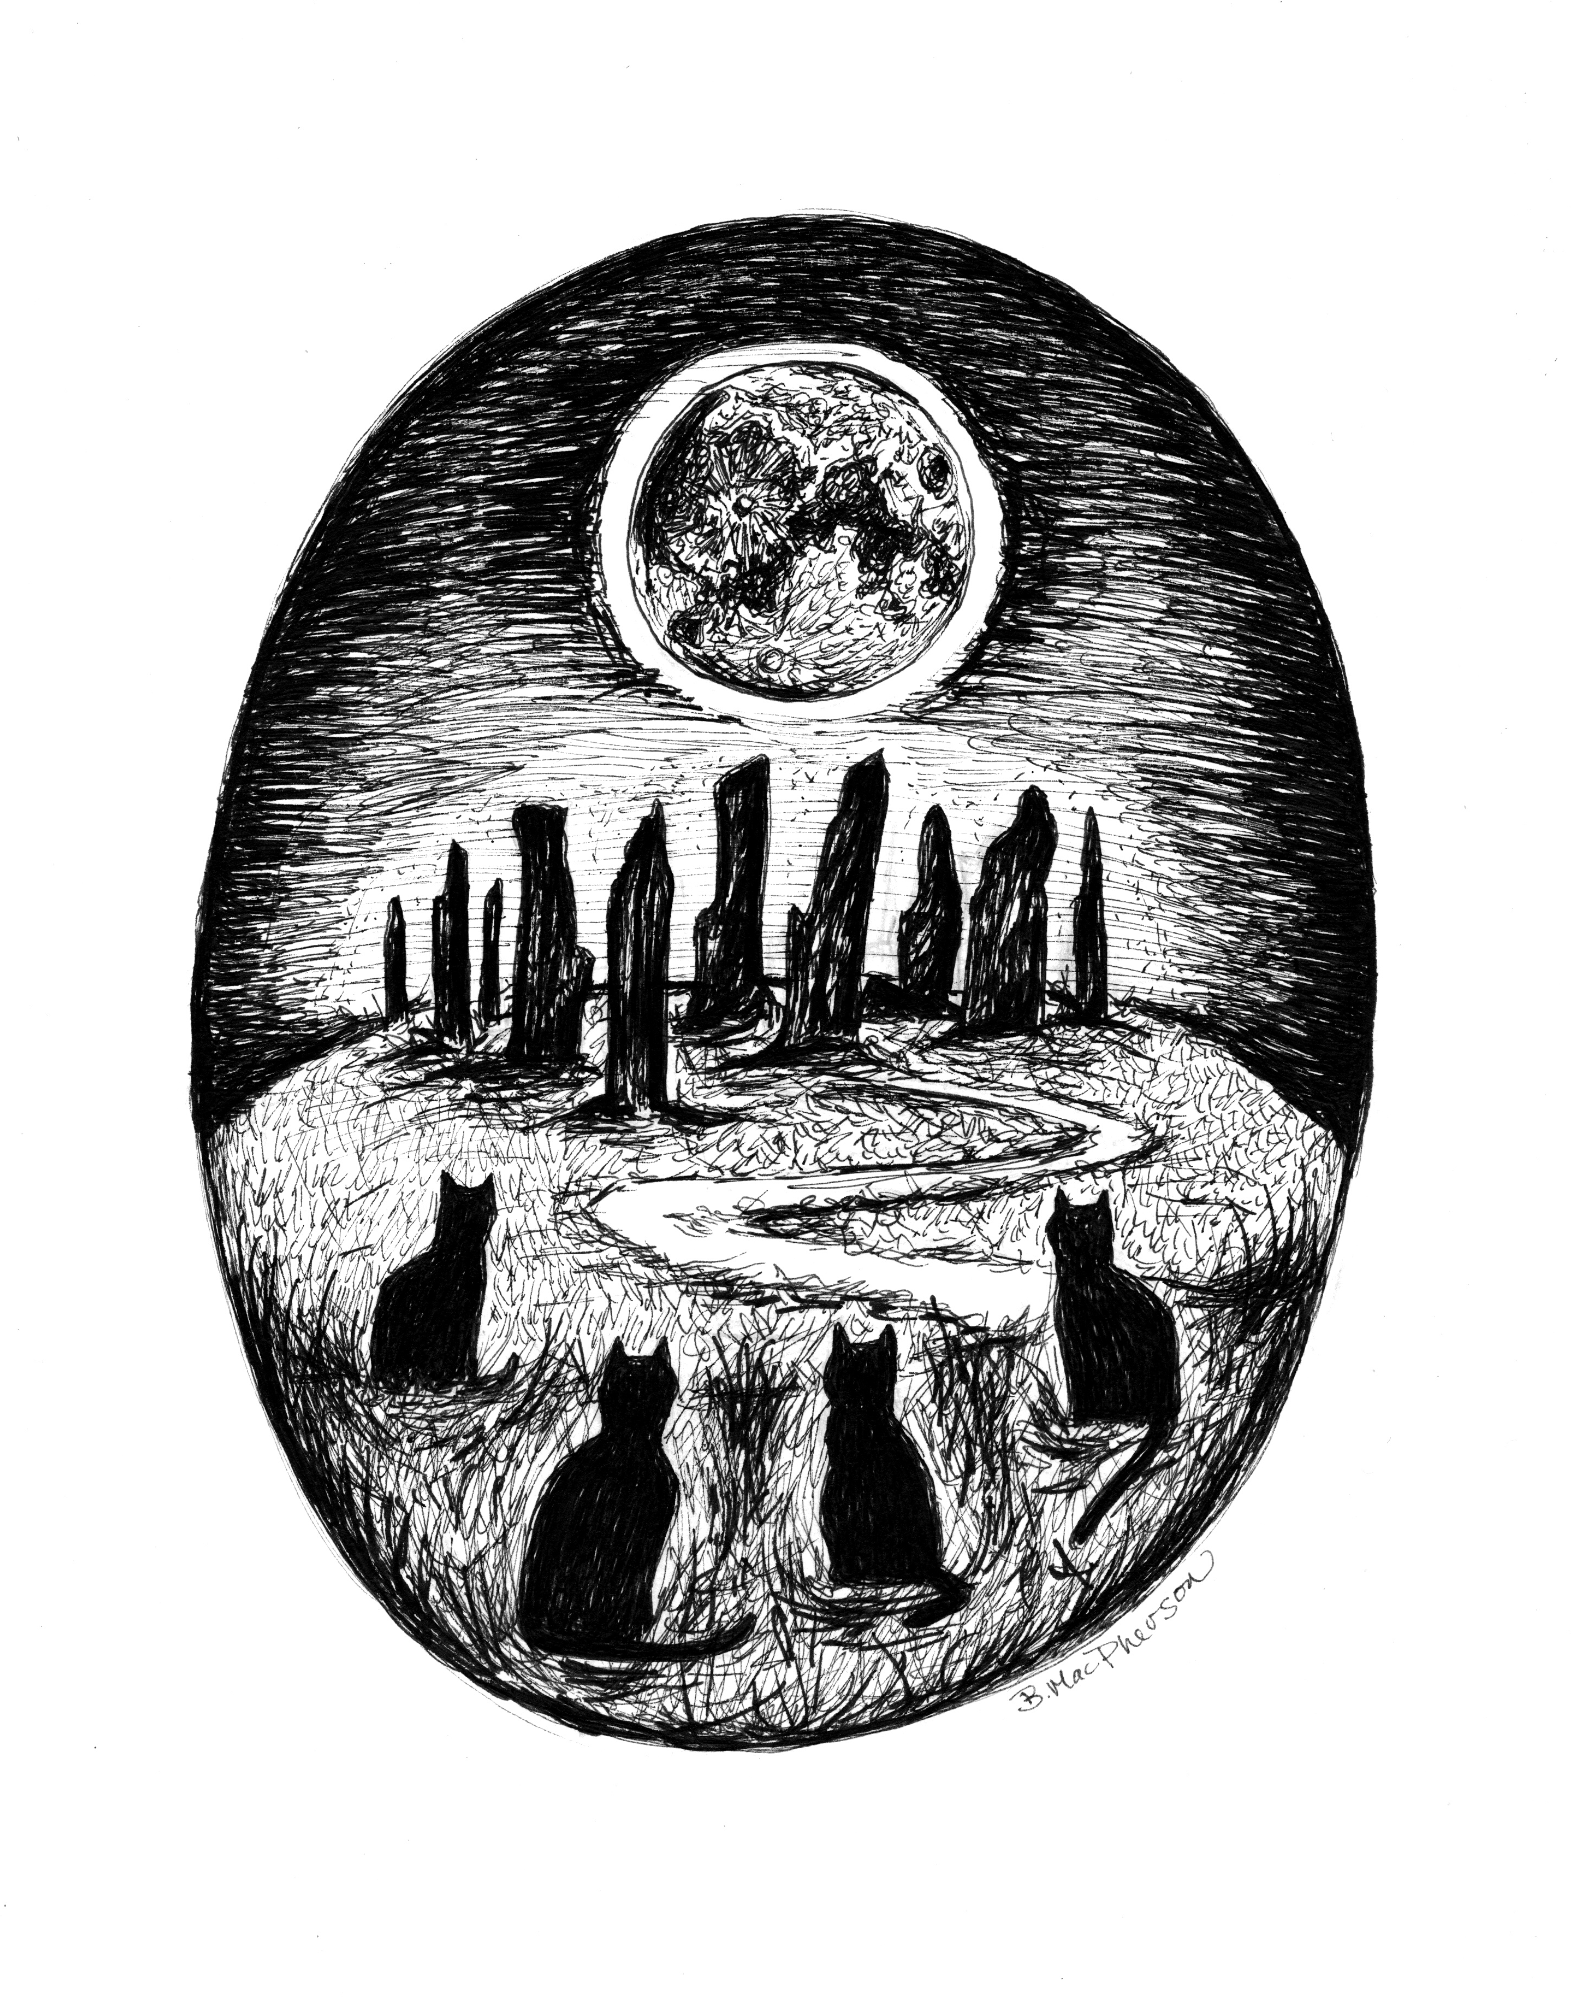 Full Moon Ritual - Black Cat Art Print